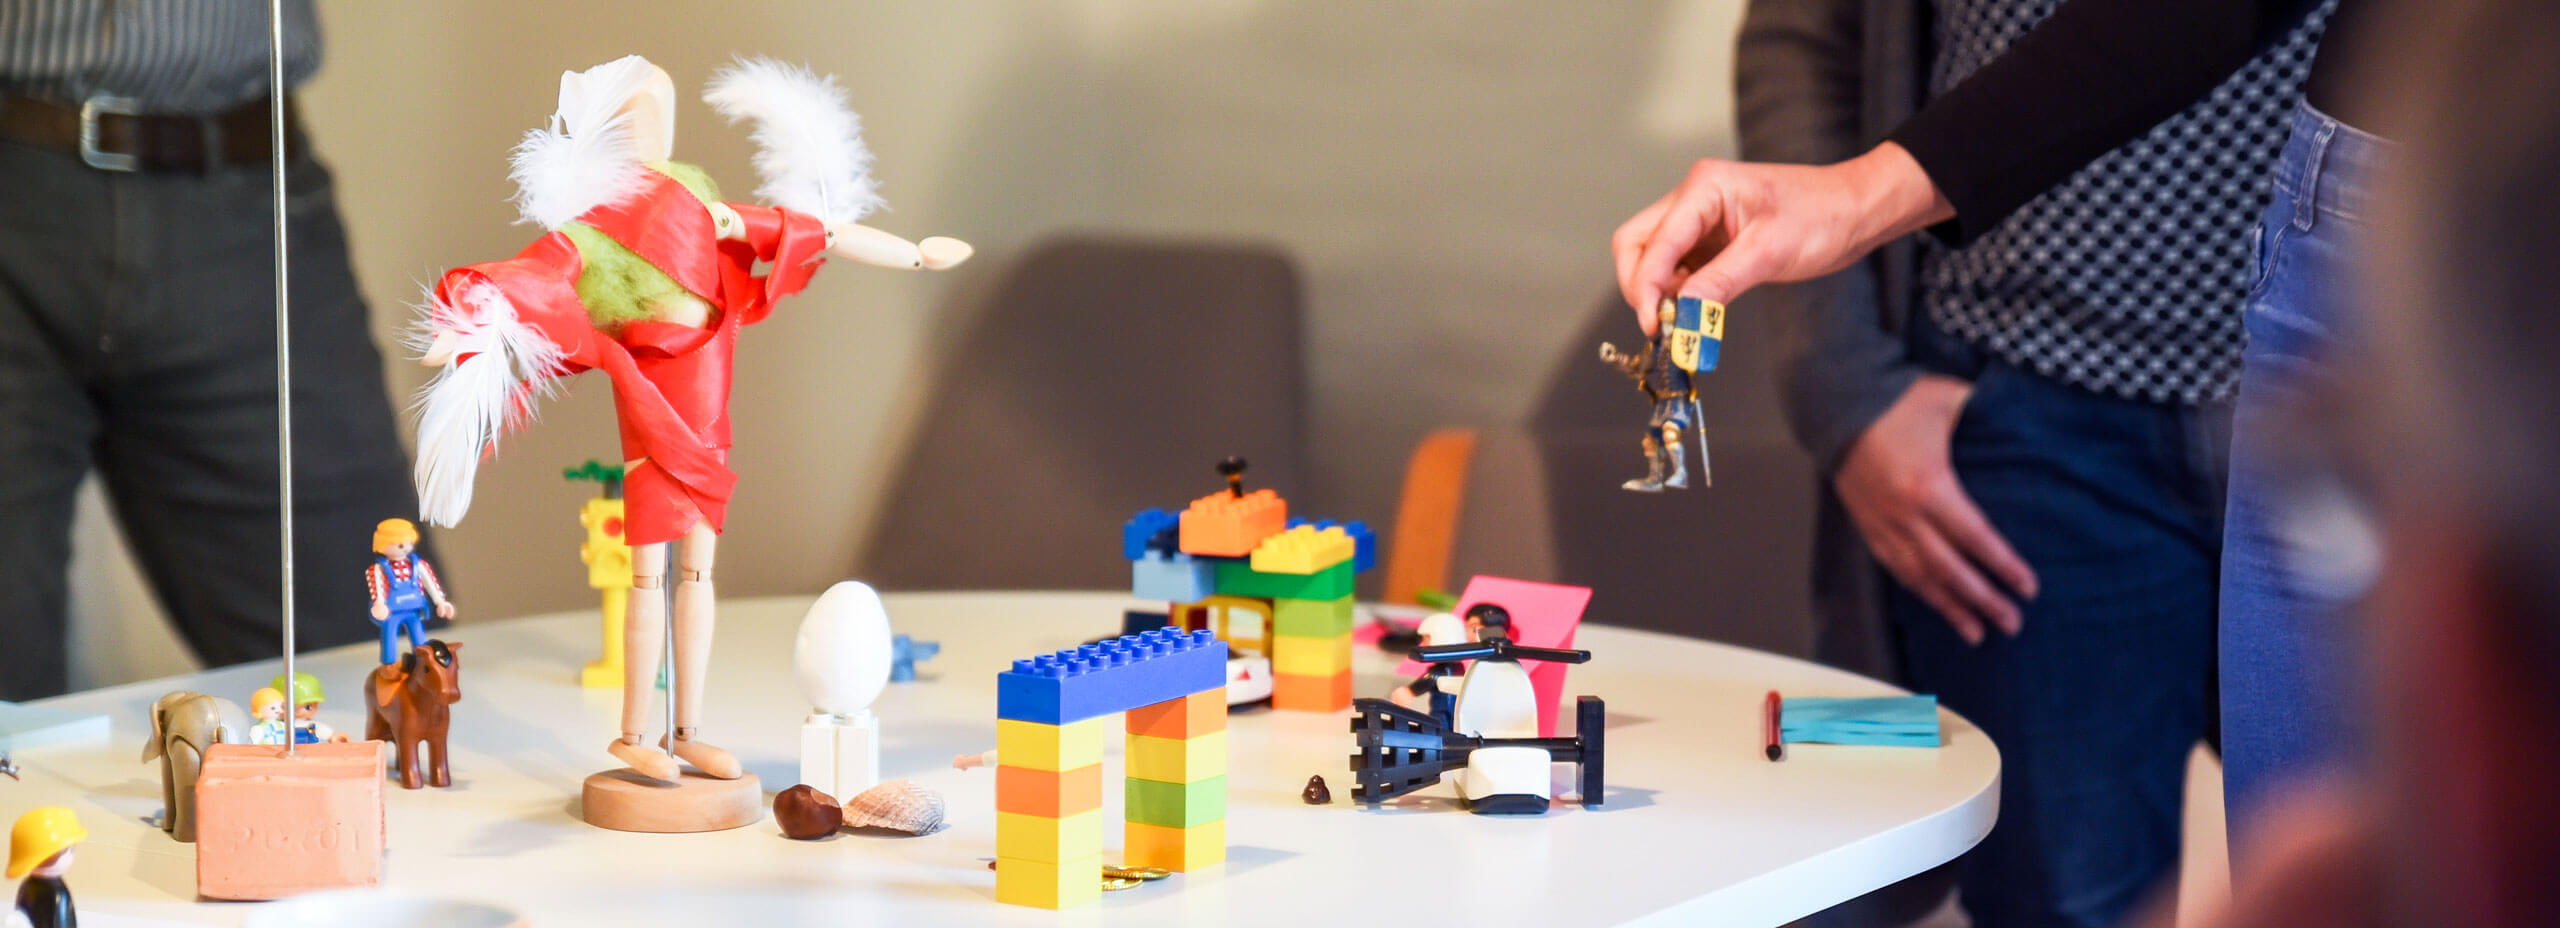 AKT Design Thinking mit Legobausteinen